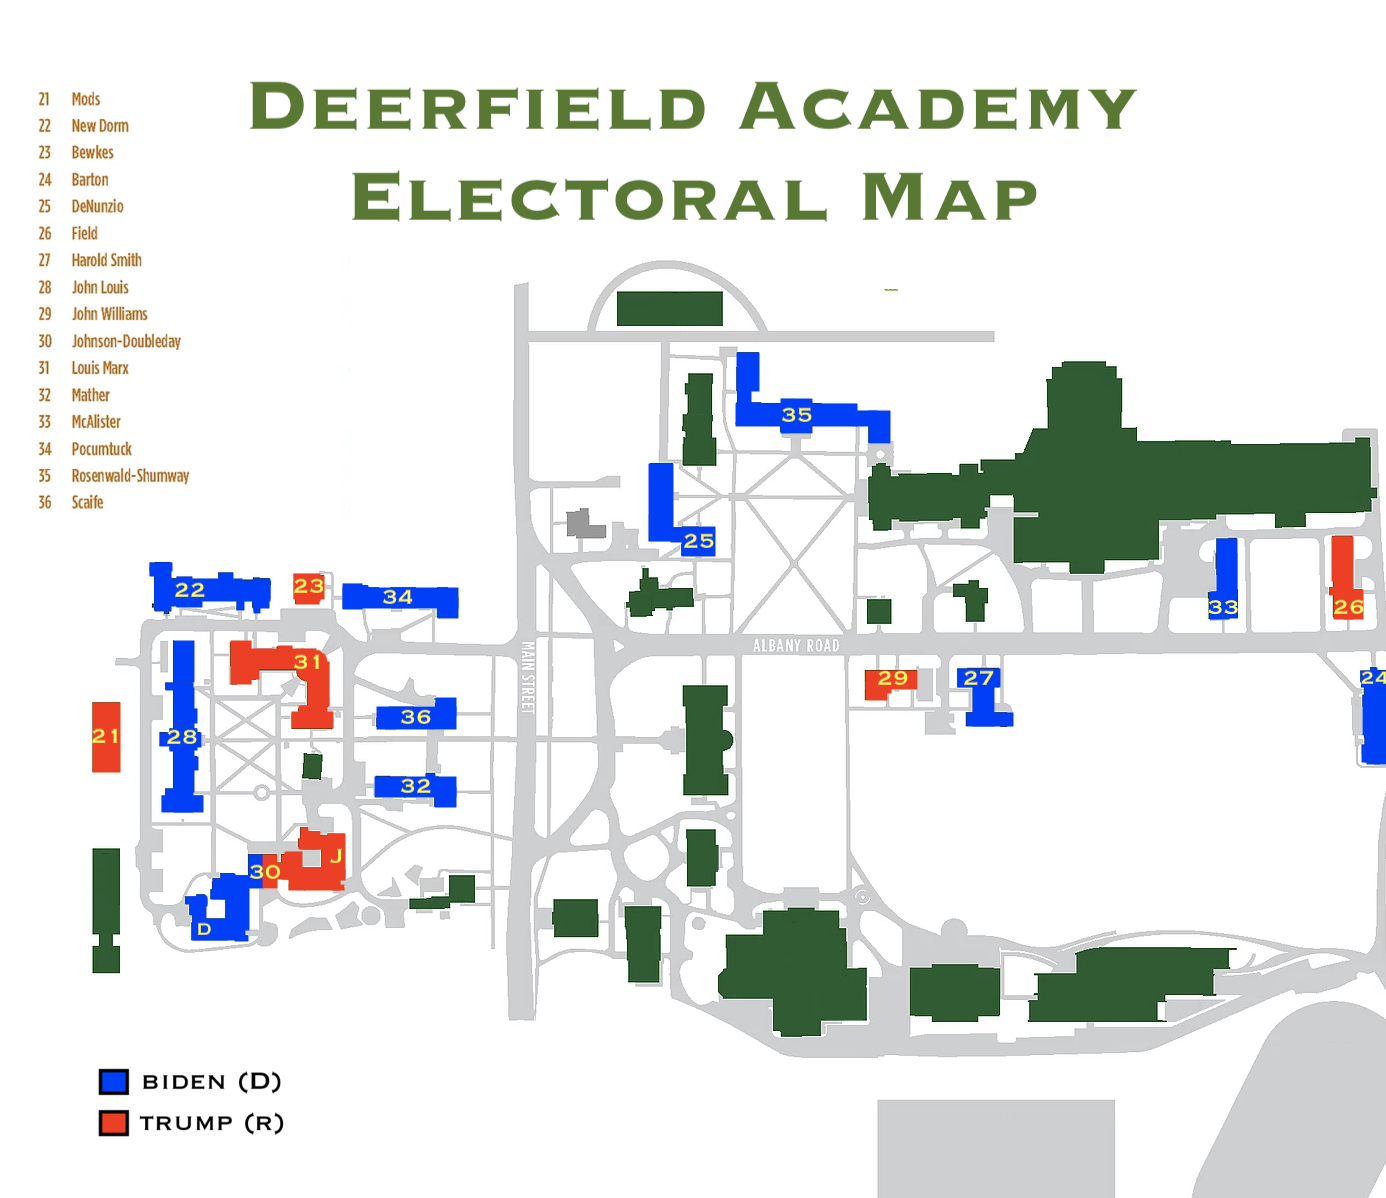 Statistics on Deerfield Academy: 2020 Presidential Election Deerfield